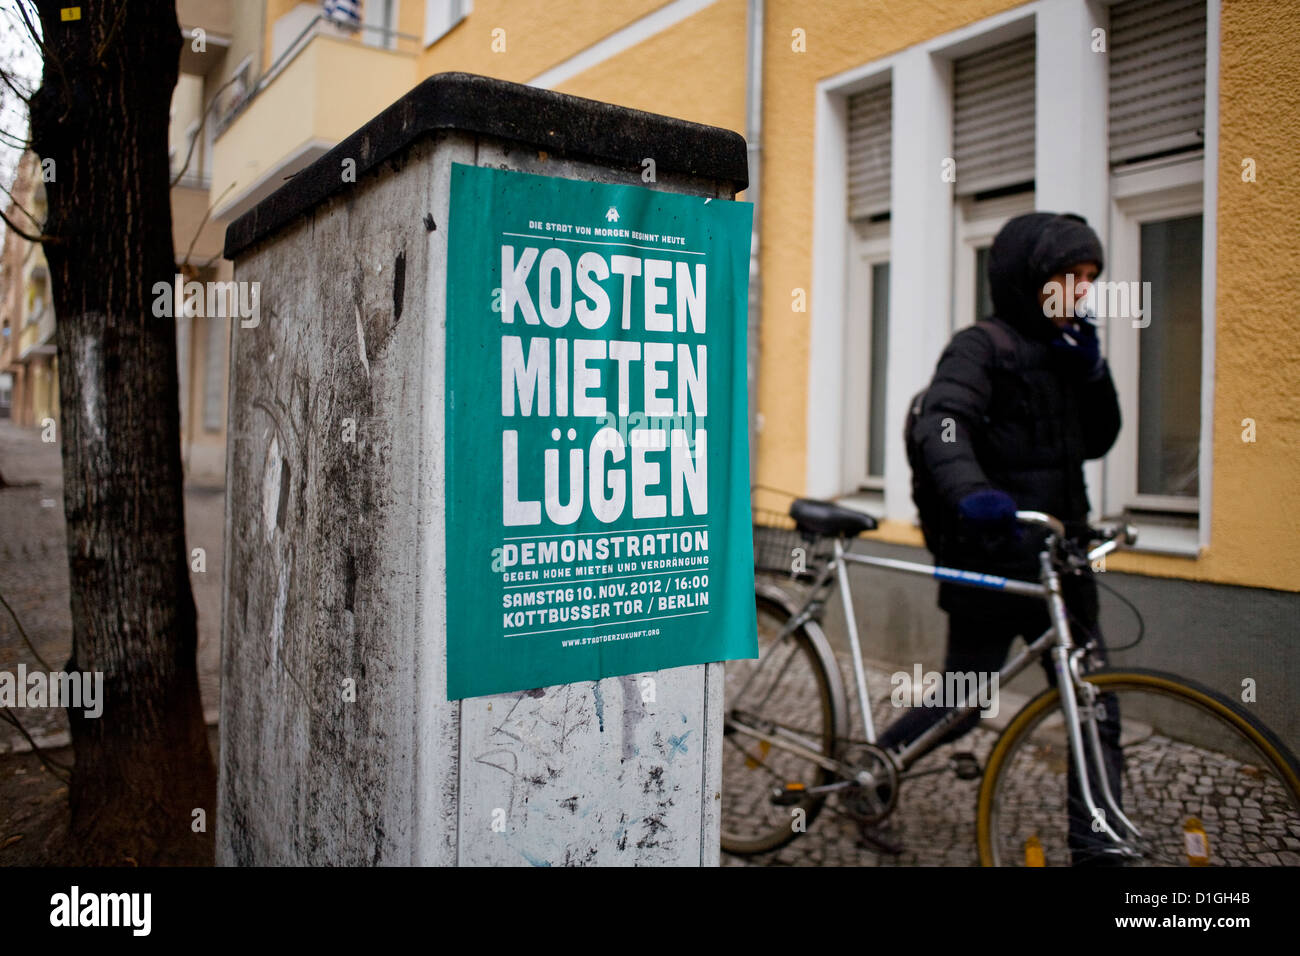 Una persona spingendo una bici e passeggiate fumatori passato un poster la lettura " Costi Affitti sta' è raffigurato in Berlin-Neukoelln, Germania, 19 dicembre 2012. Foto: Inga Kjer Foto Stock